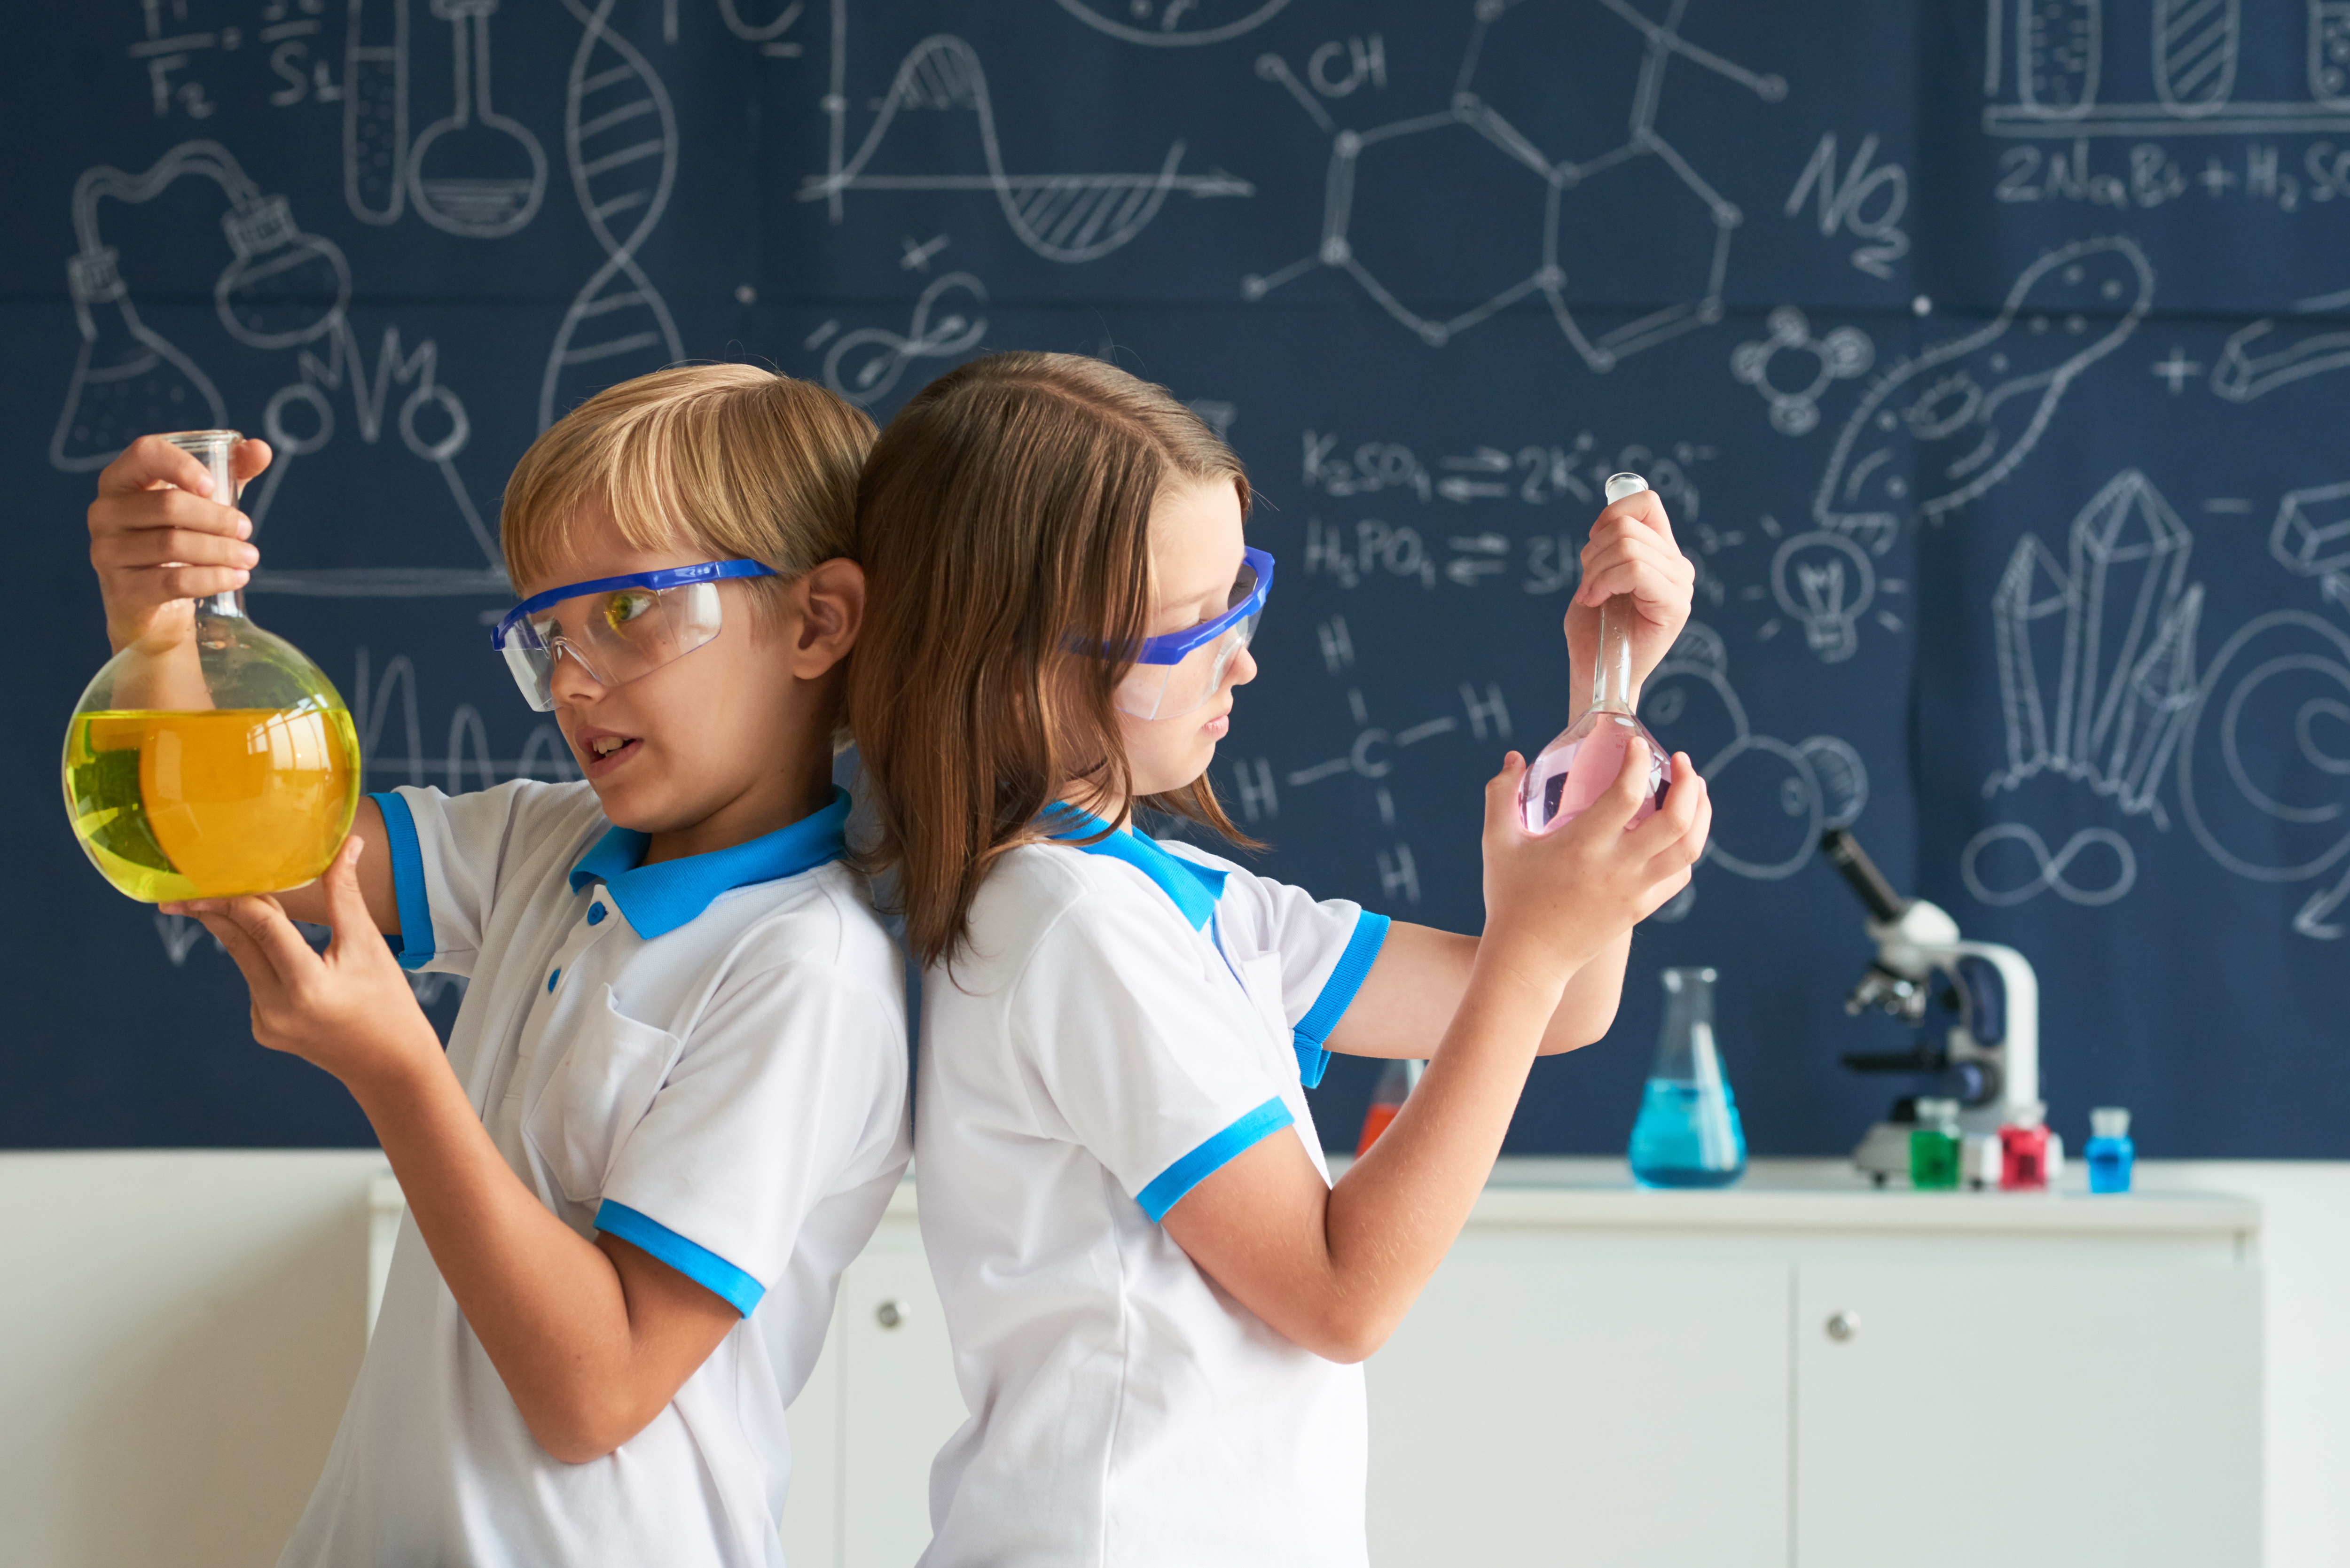 Con i migliori giochi scientifici per bambini, la scienza non avrà più segreti per i vostri figli e nipoti